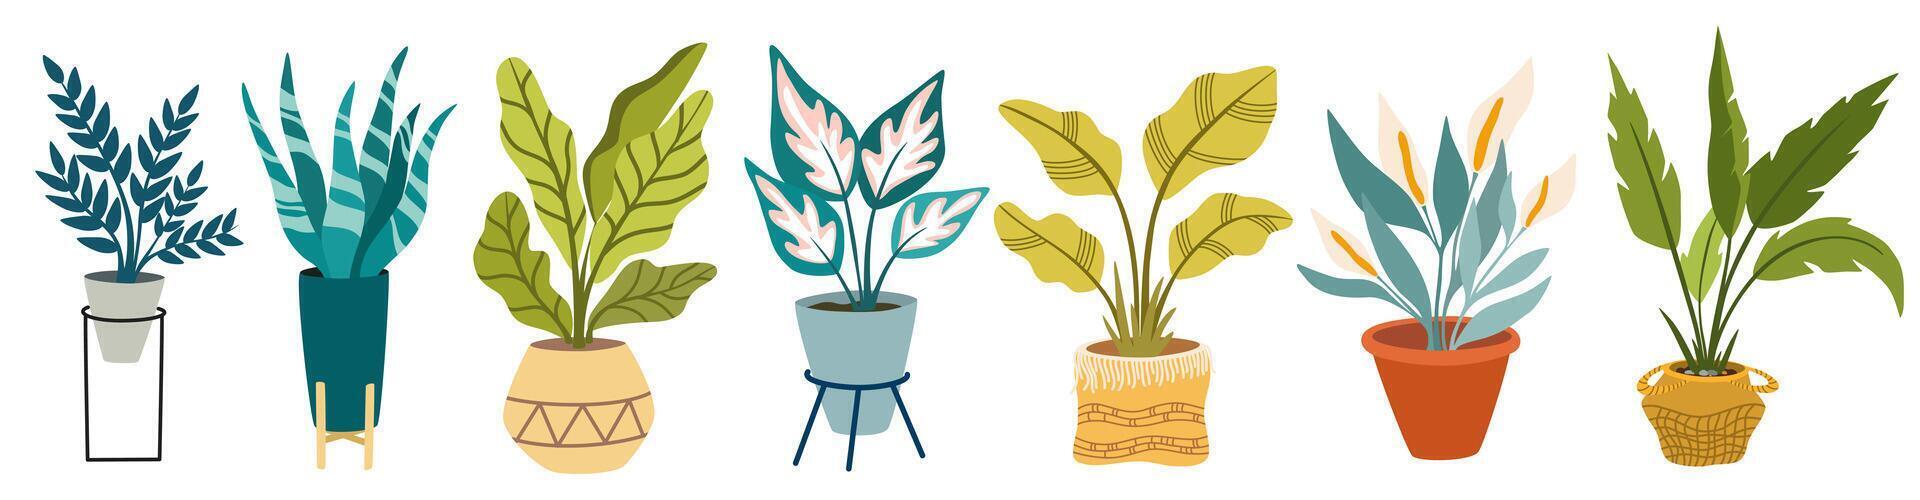 stedelijk oerwoud, modieus huis decor met planten, cactussen, tropisch bladeren in elegant plantenbakken en potten. vector hand- trek illustratie